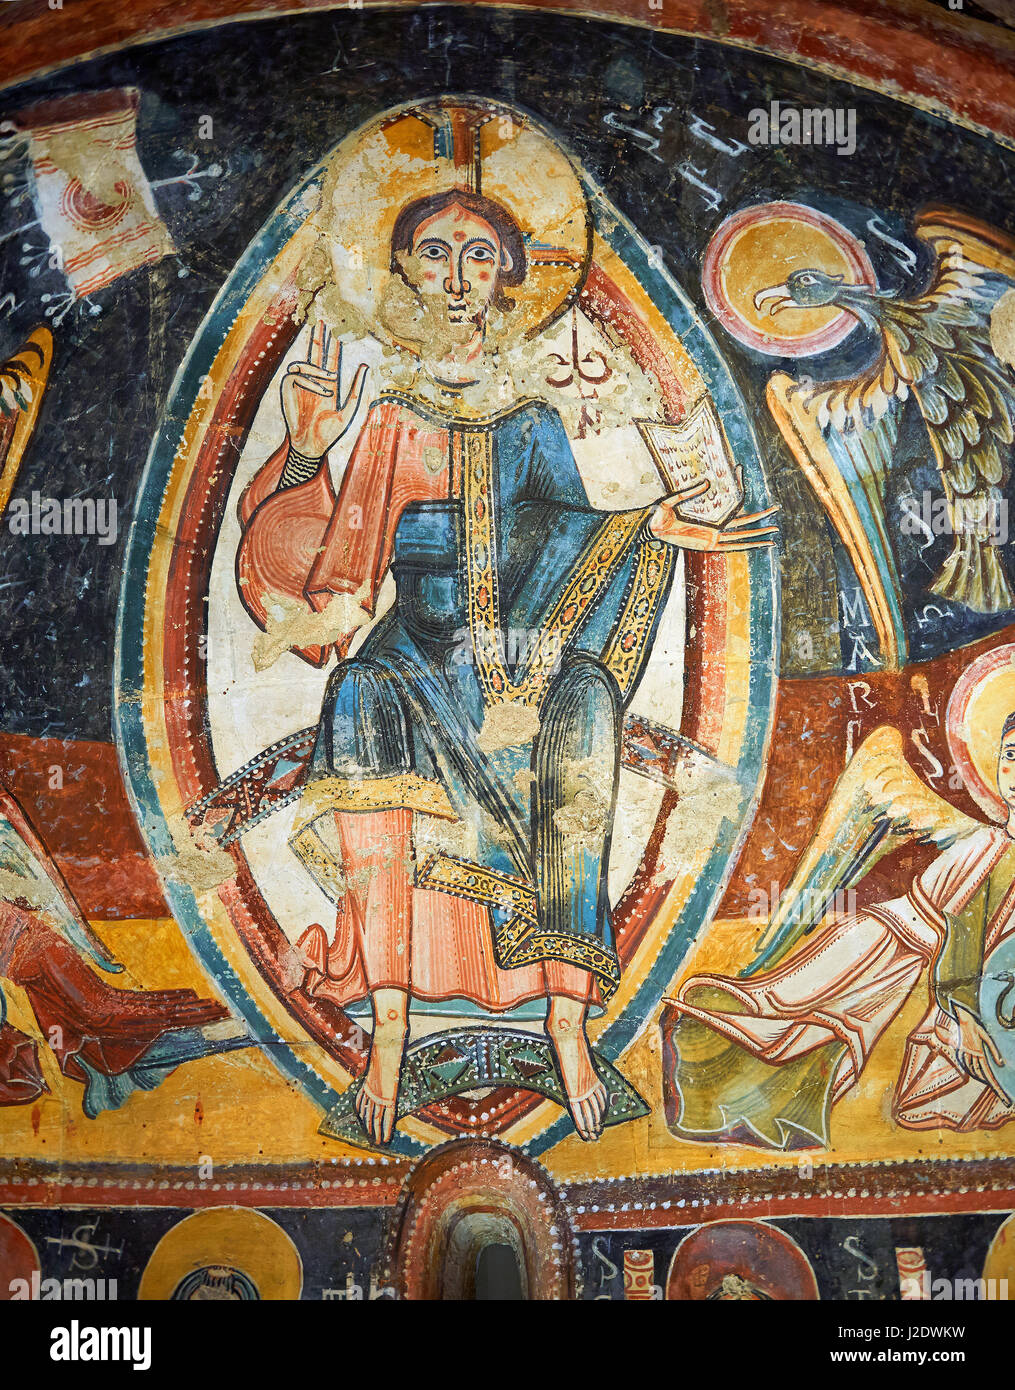 Romanische Fresken Darstellung Christus Pantokrator aus der Kirche von Sant Miguel d'Engolasters, Les Escaldes Andorra... Malte etwa 1160. Nationale A Stockfoto